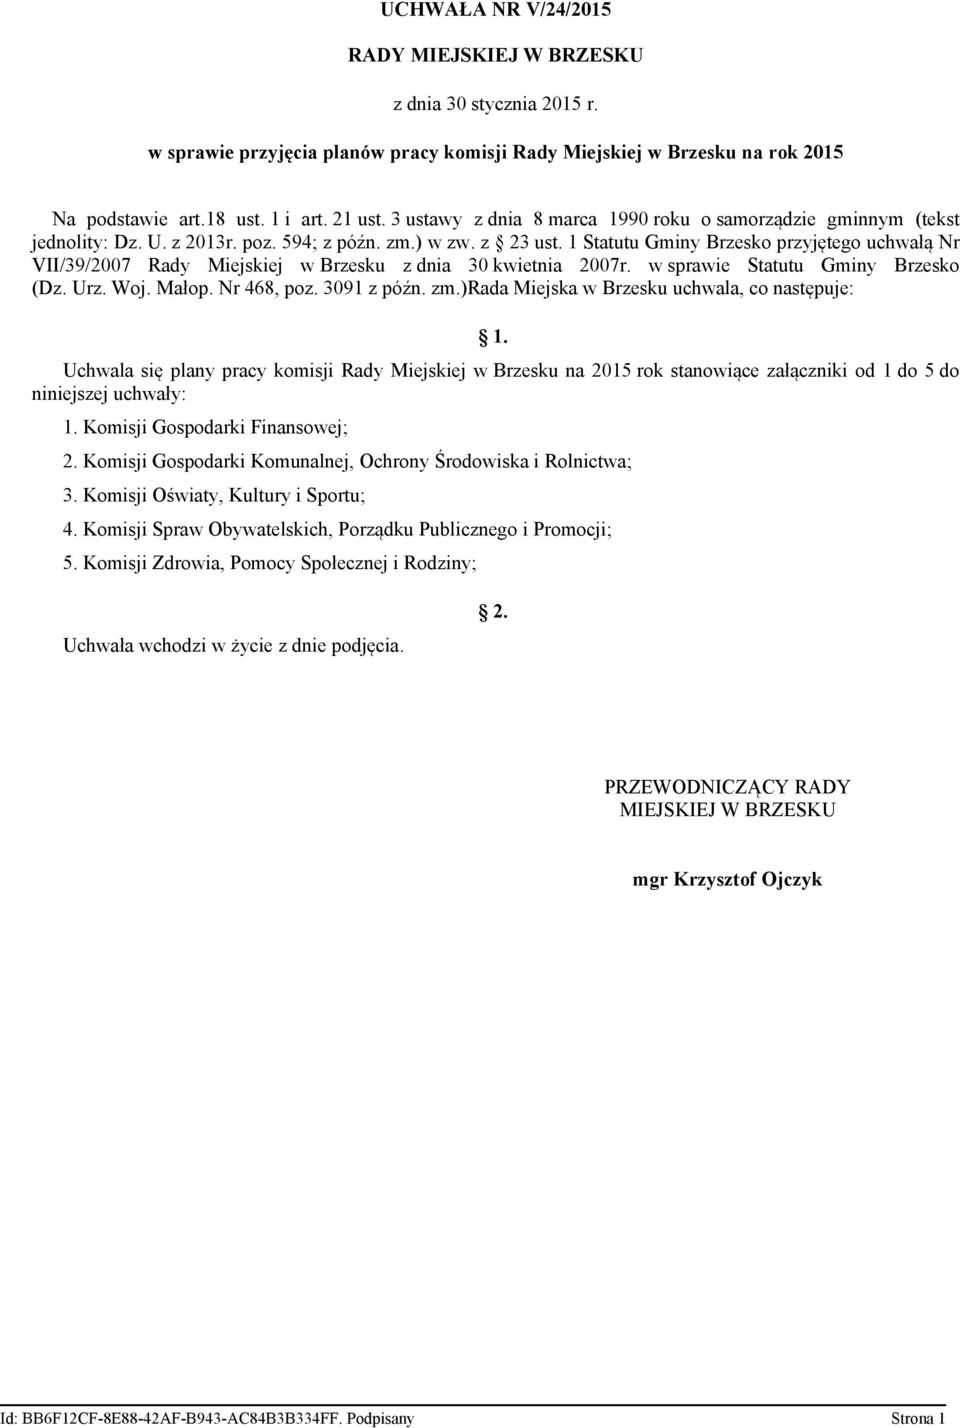 1 Statutu Gminy Brzesko przyjętego uchwałą Nr VII/39/2007 Rady Miejskiej w Brzesku z dnia 30 kwietnia 2007r. w sprawie Statutu Gminy Brzesko (Dz. Urz. Woj. Małop. Nr 468, poz. 3091 z późn. zm.